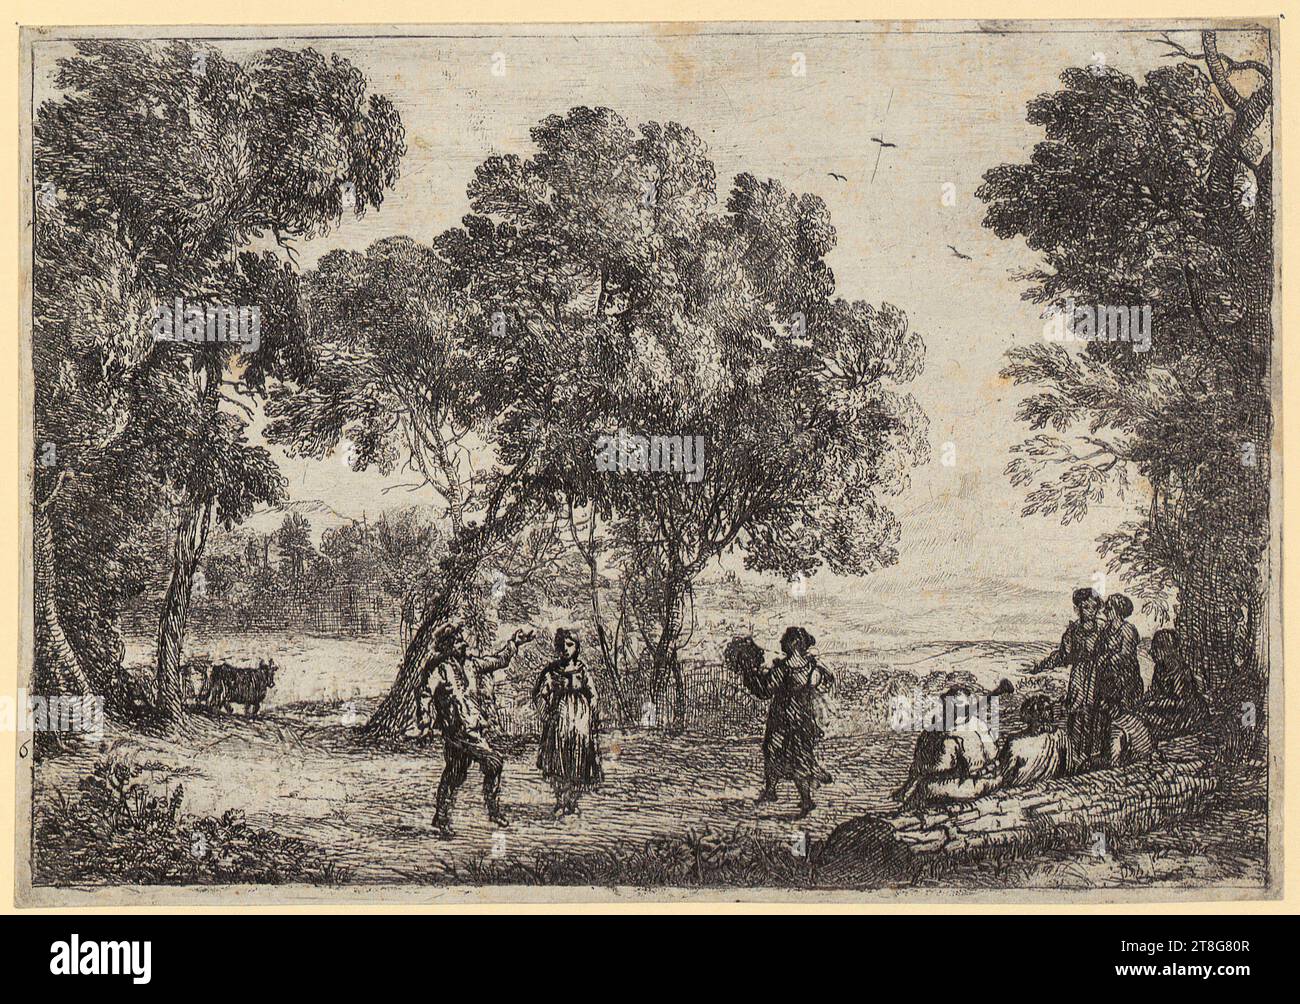 Claude Lorrain (1604, 1605 - 1682), danse sous les arbres petite assiette, support d'impression : circa 1637, gravure, taille de la feuille : 13,8 x 19,9 cm, recto numéroté '6' en bas à gauche ; note du marchand verso avec graphite '5362, rxf' en bas à gauche Banque D'Images